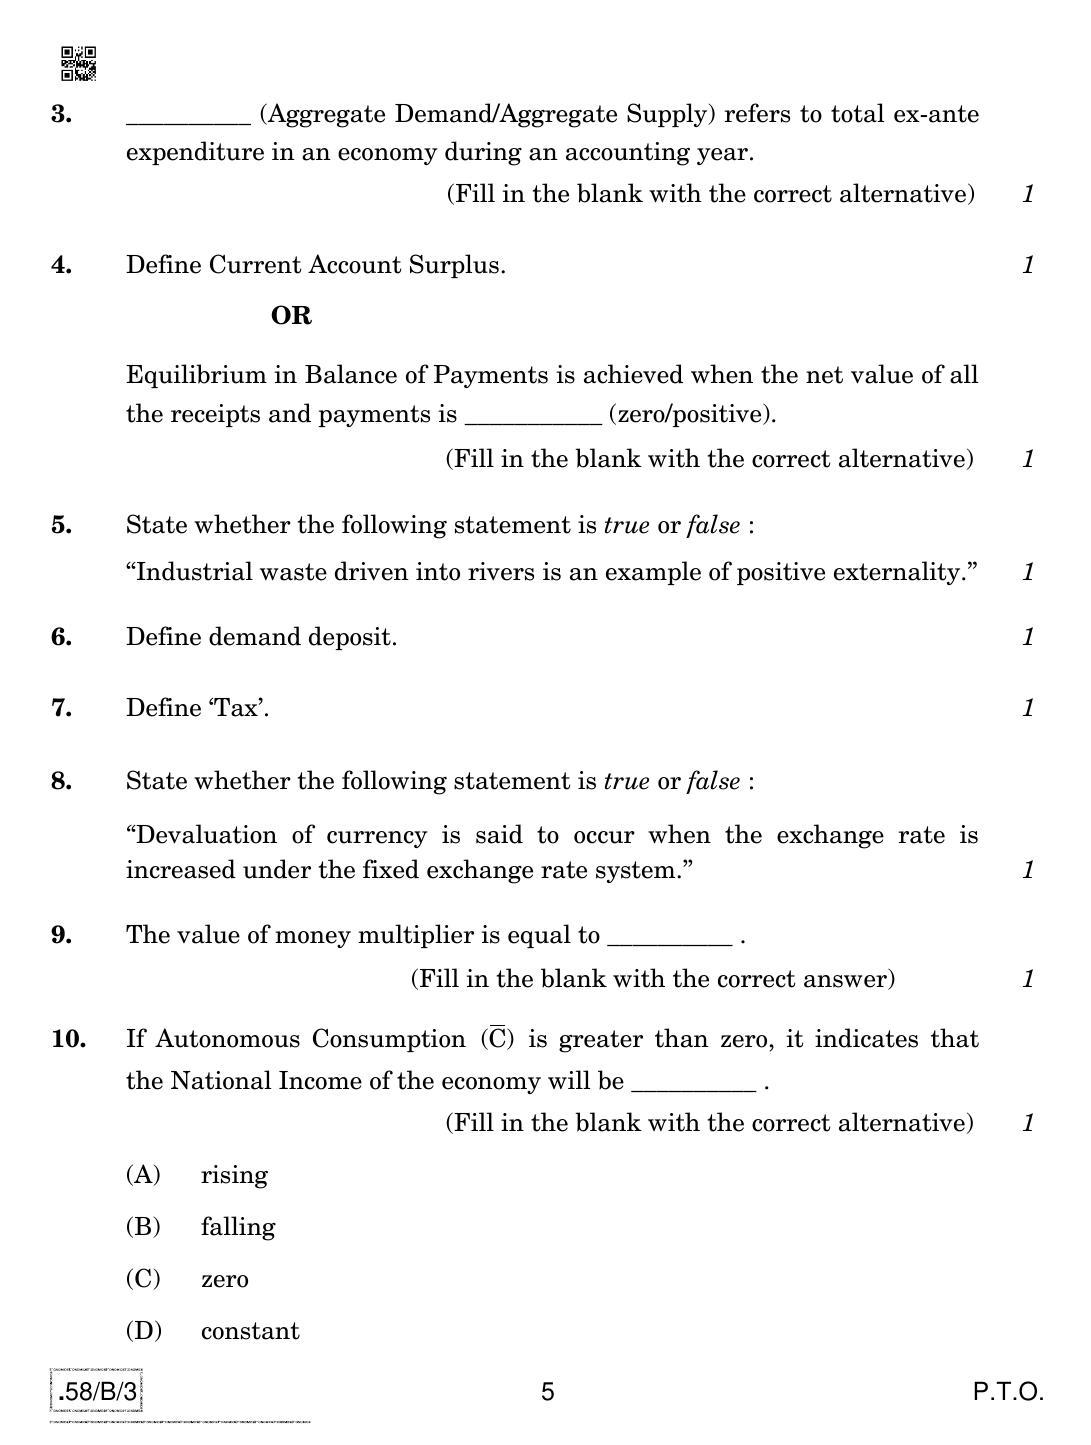 CBSE Class 12 58-C-3 - Economics 2020 Compartment Question Paper - Page 5